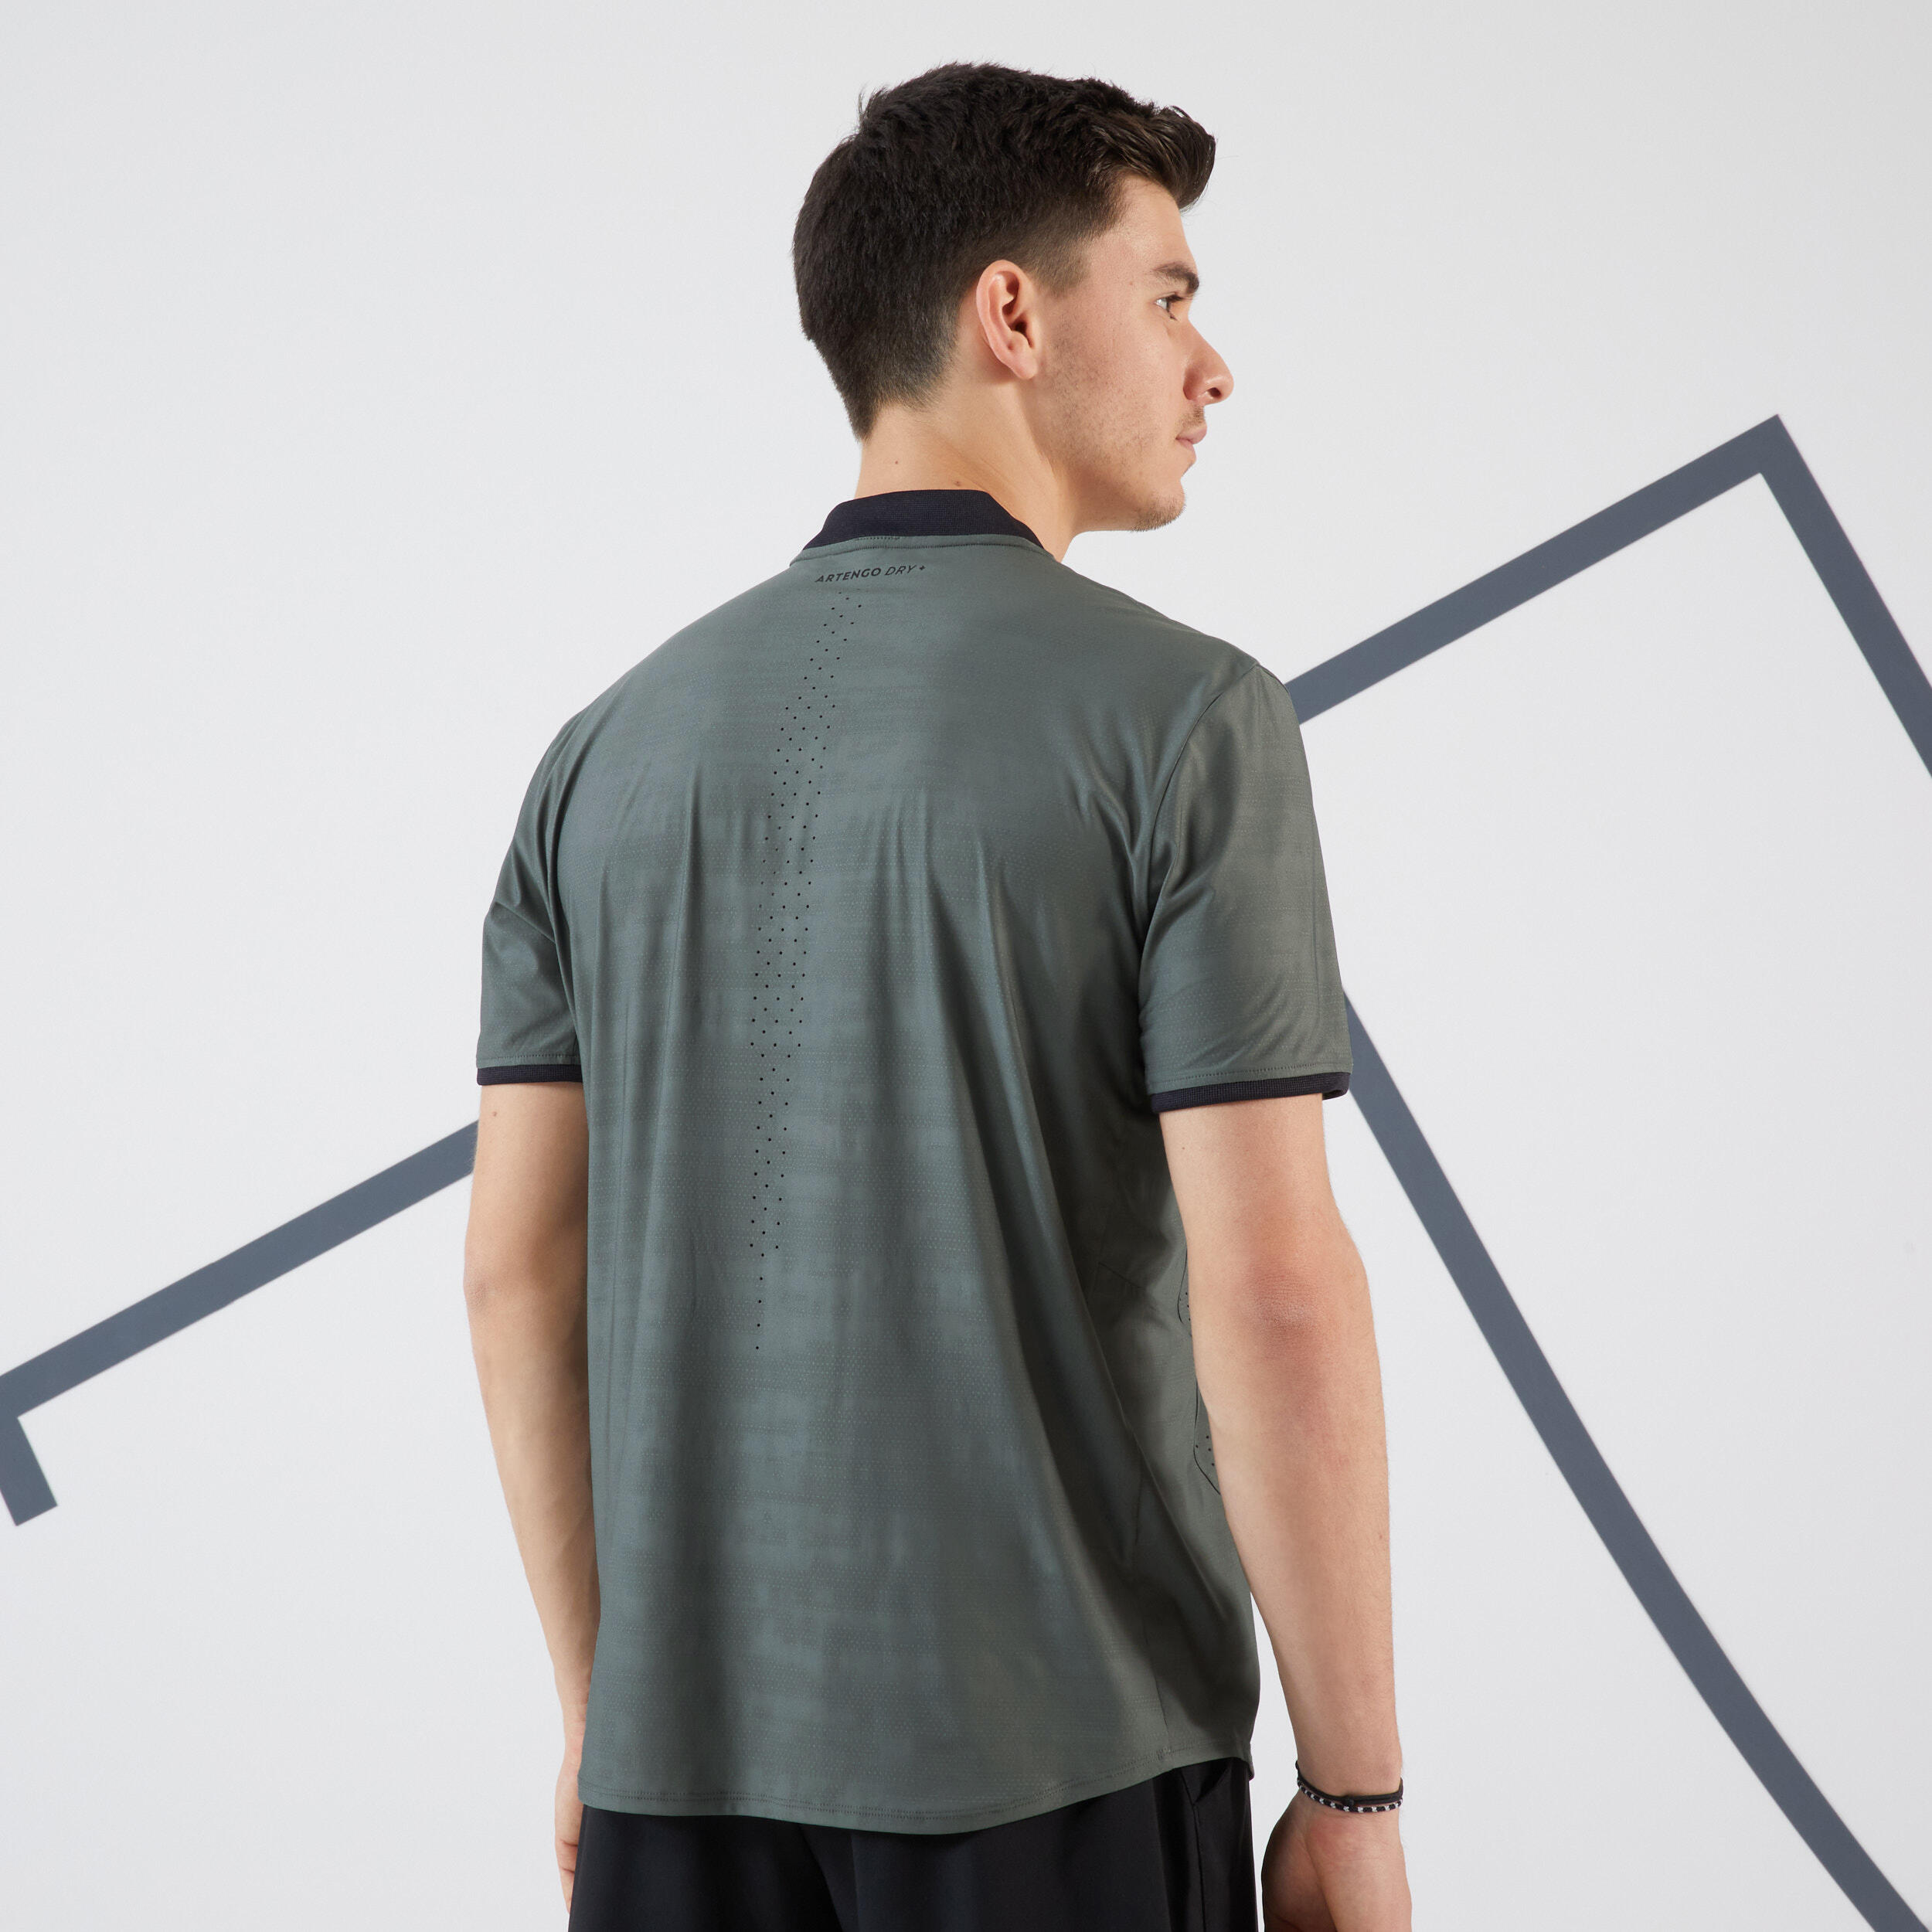 Men's Tennis Short-Sleeved T-Shirt Dry+ - Khaki 5/6